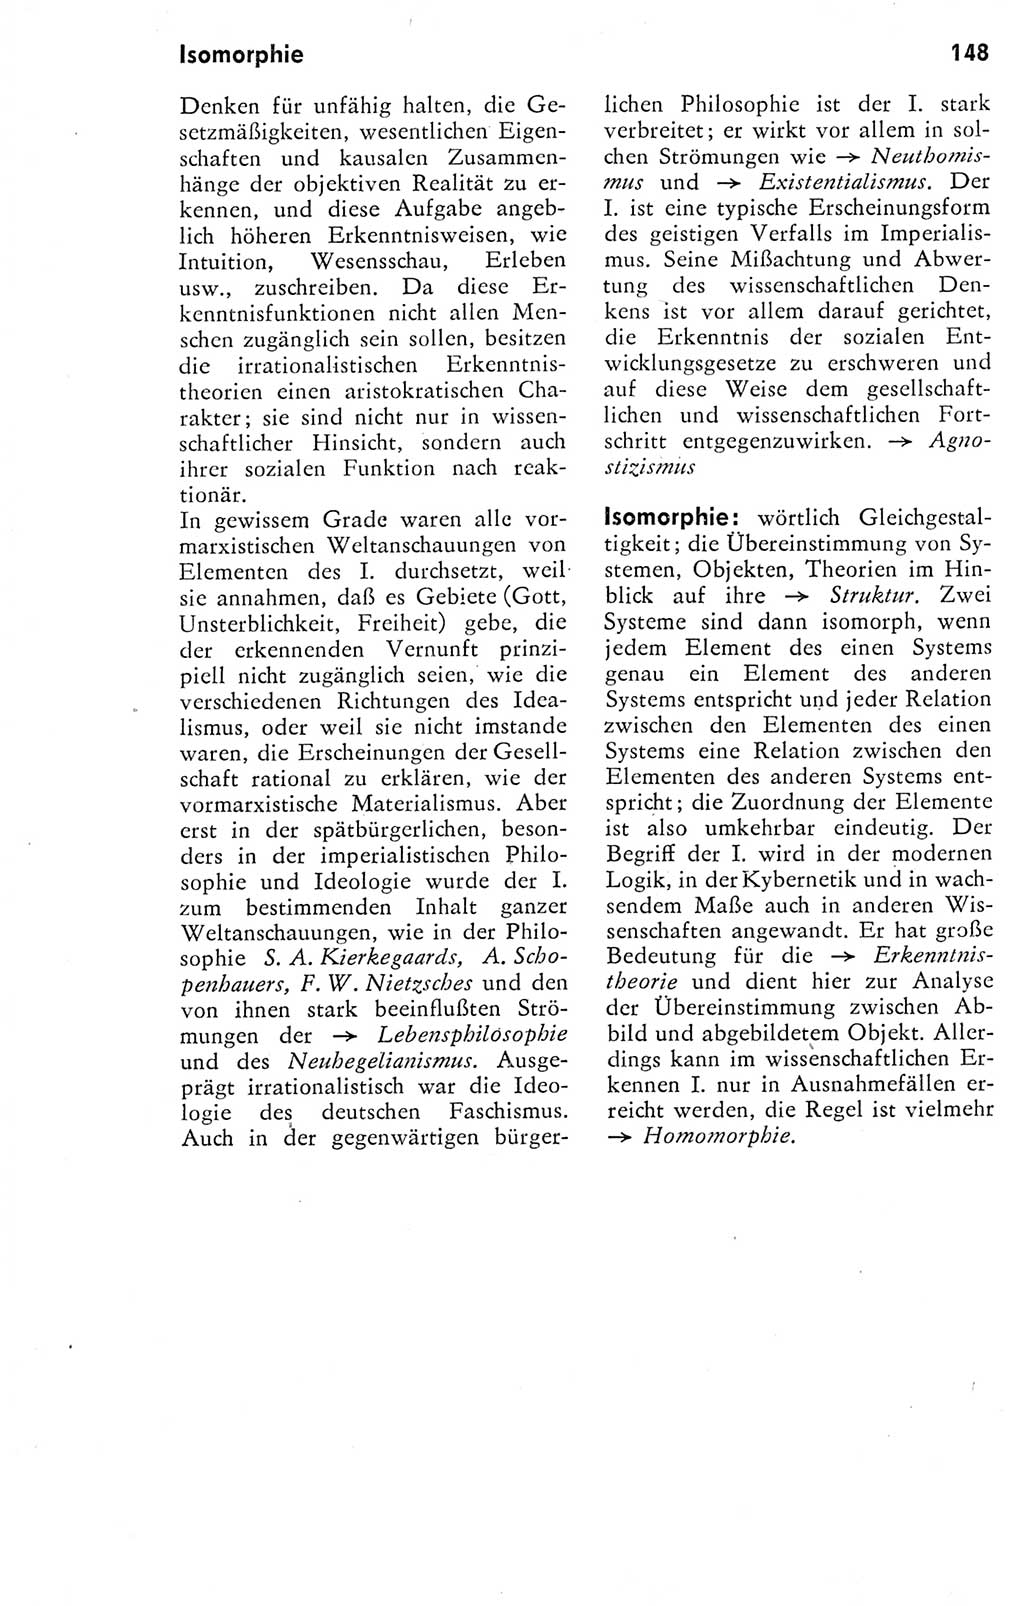 Kleines Wörterbuch der marxistisch-leninistischen Philosophie [Deutsche Demokratische Republik (DDR)] 1974, Seite 148 (Kl. Wb. ML Phil. DDR 1974, S. 148)